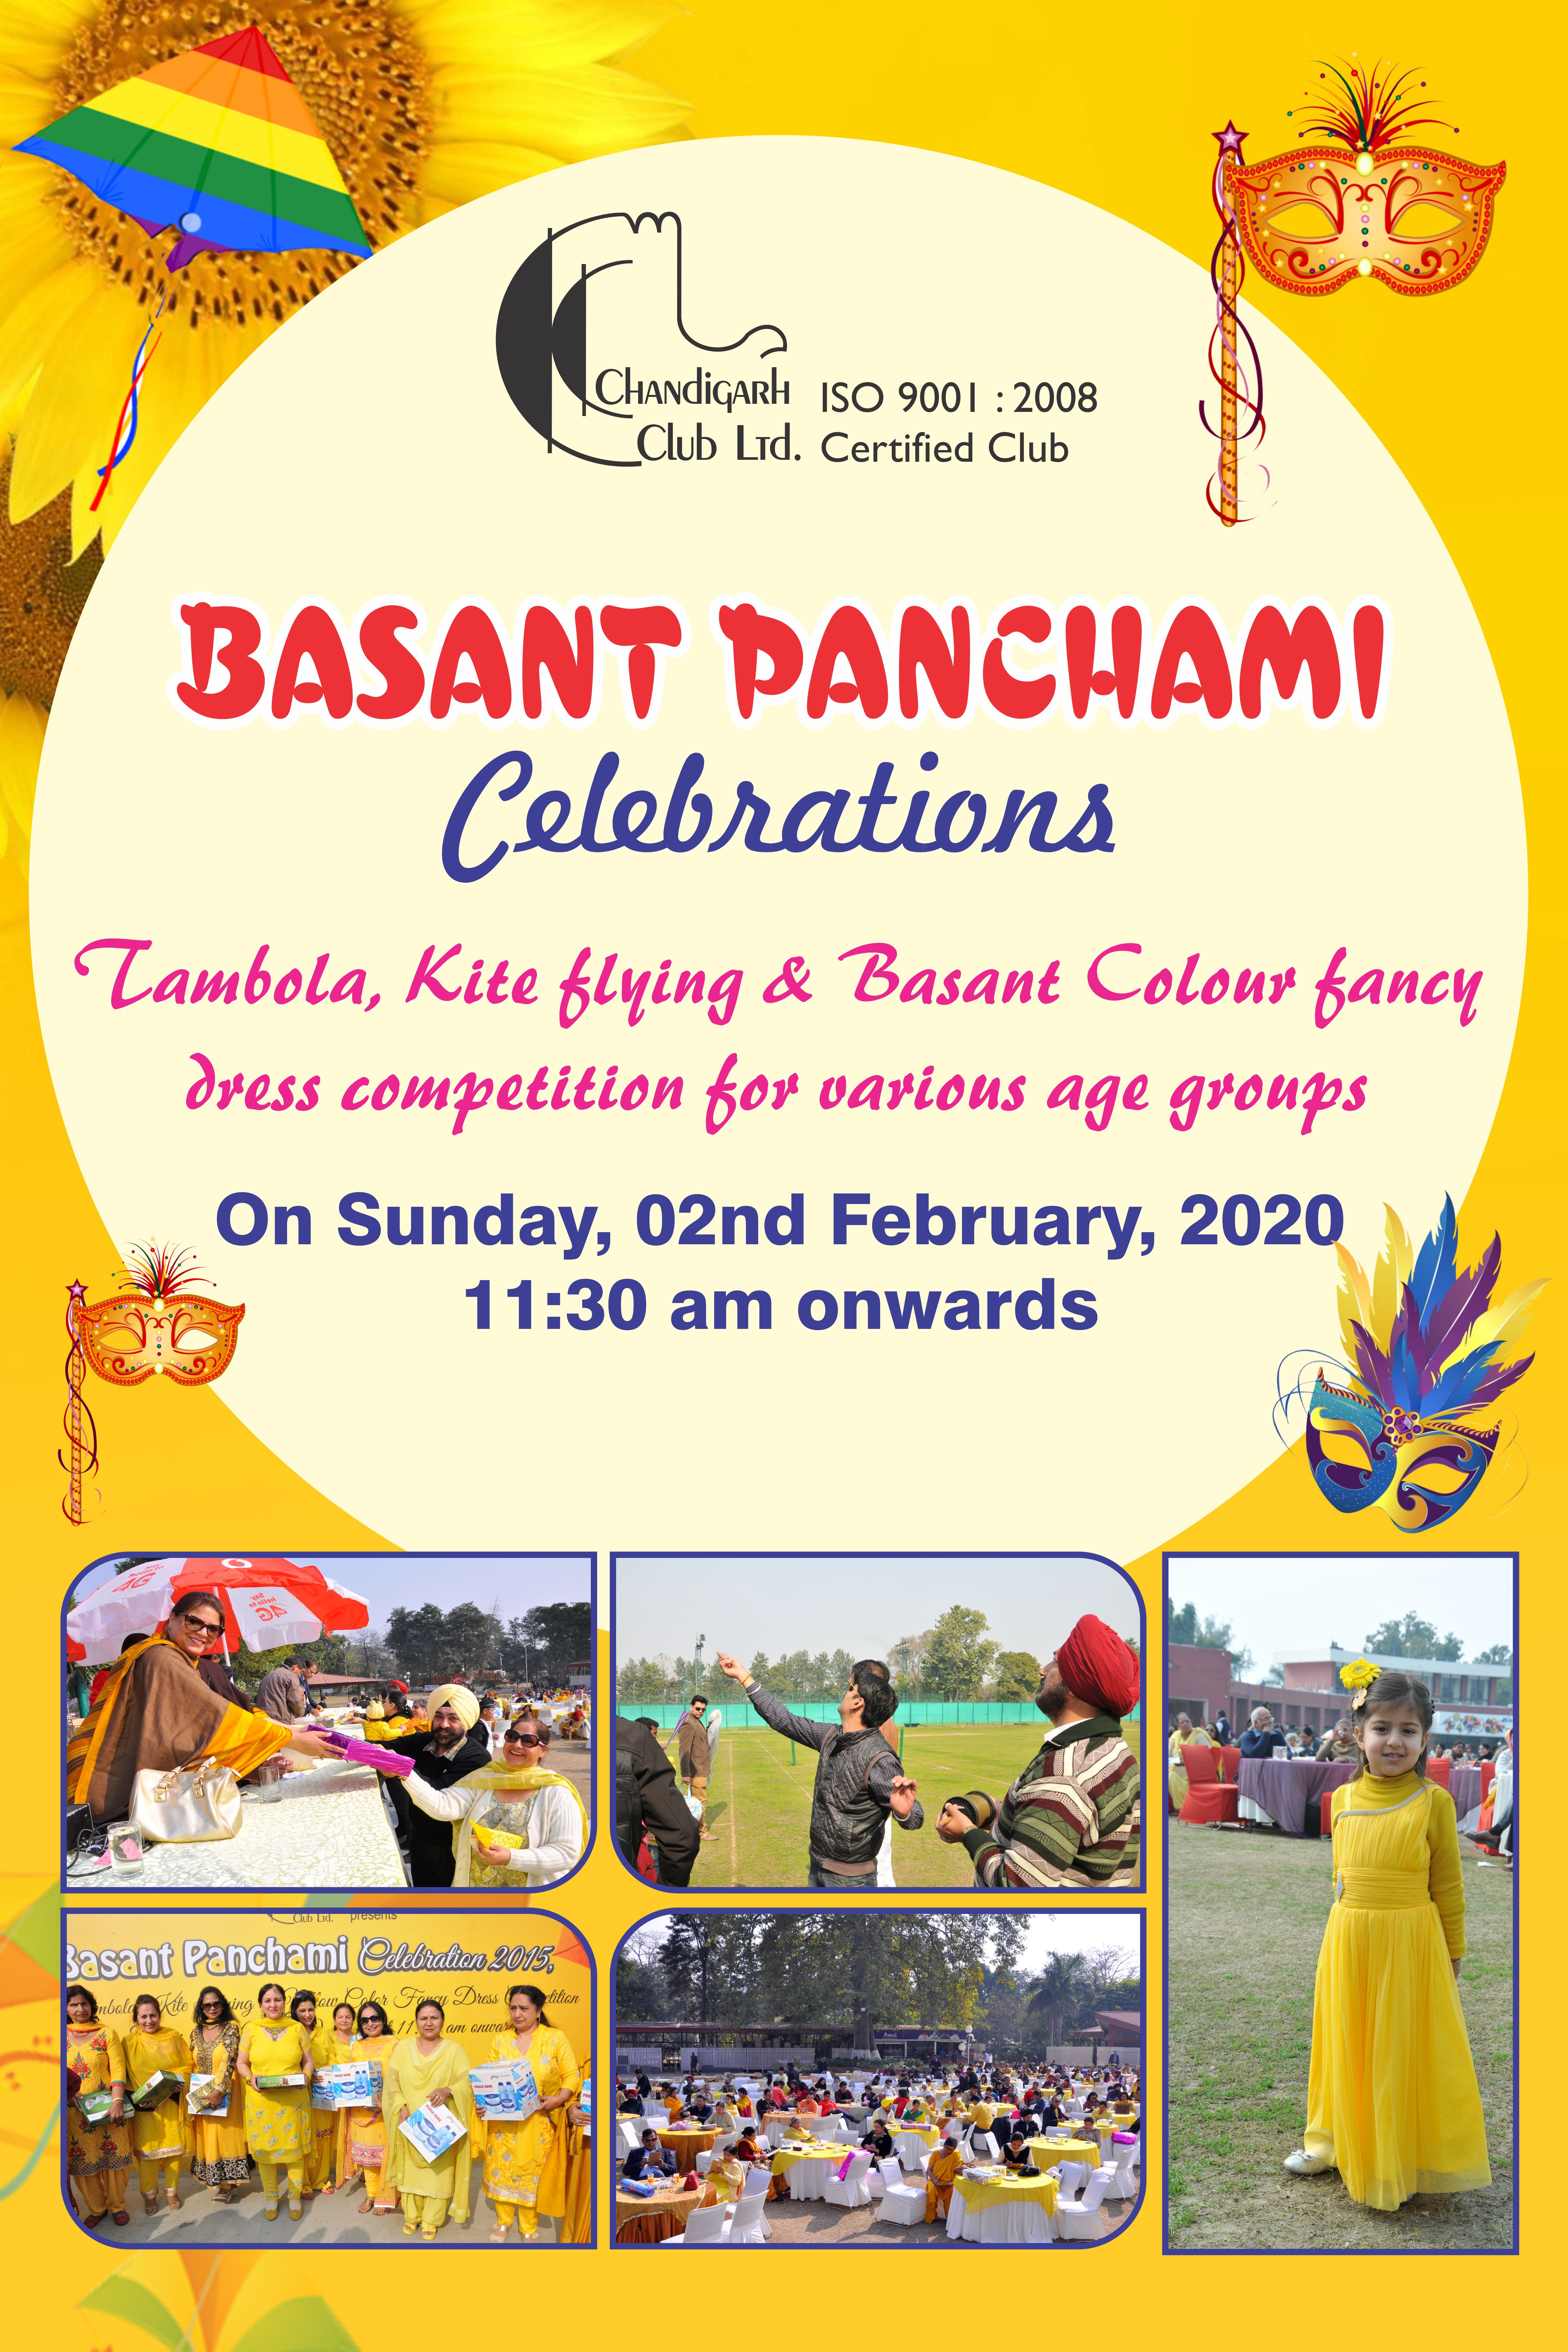 Happy Basant Panchami